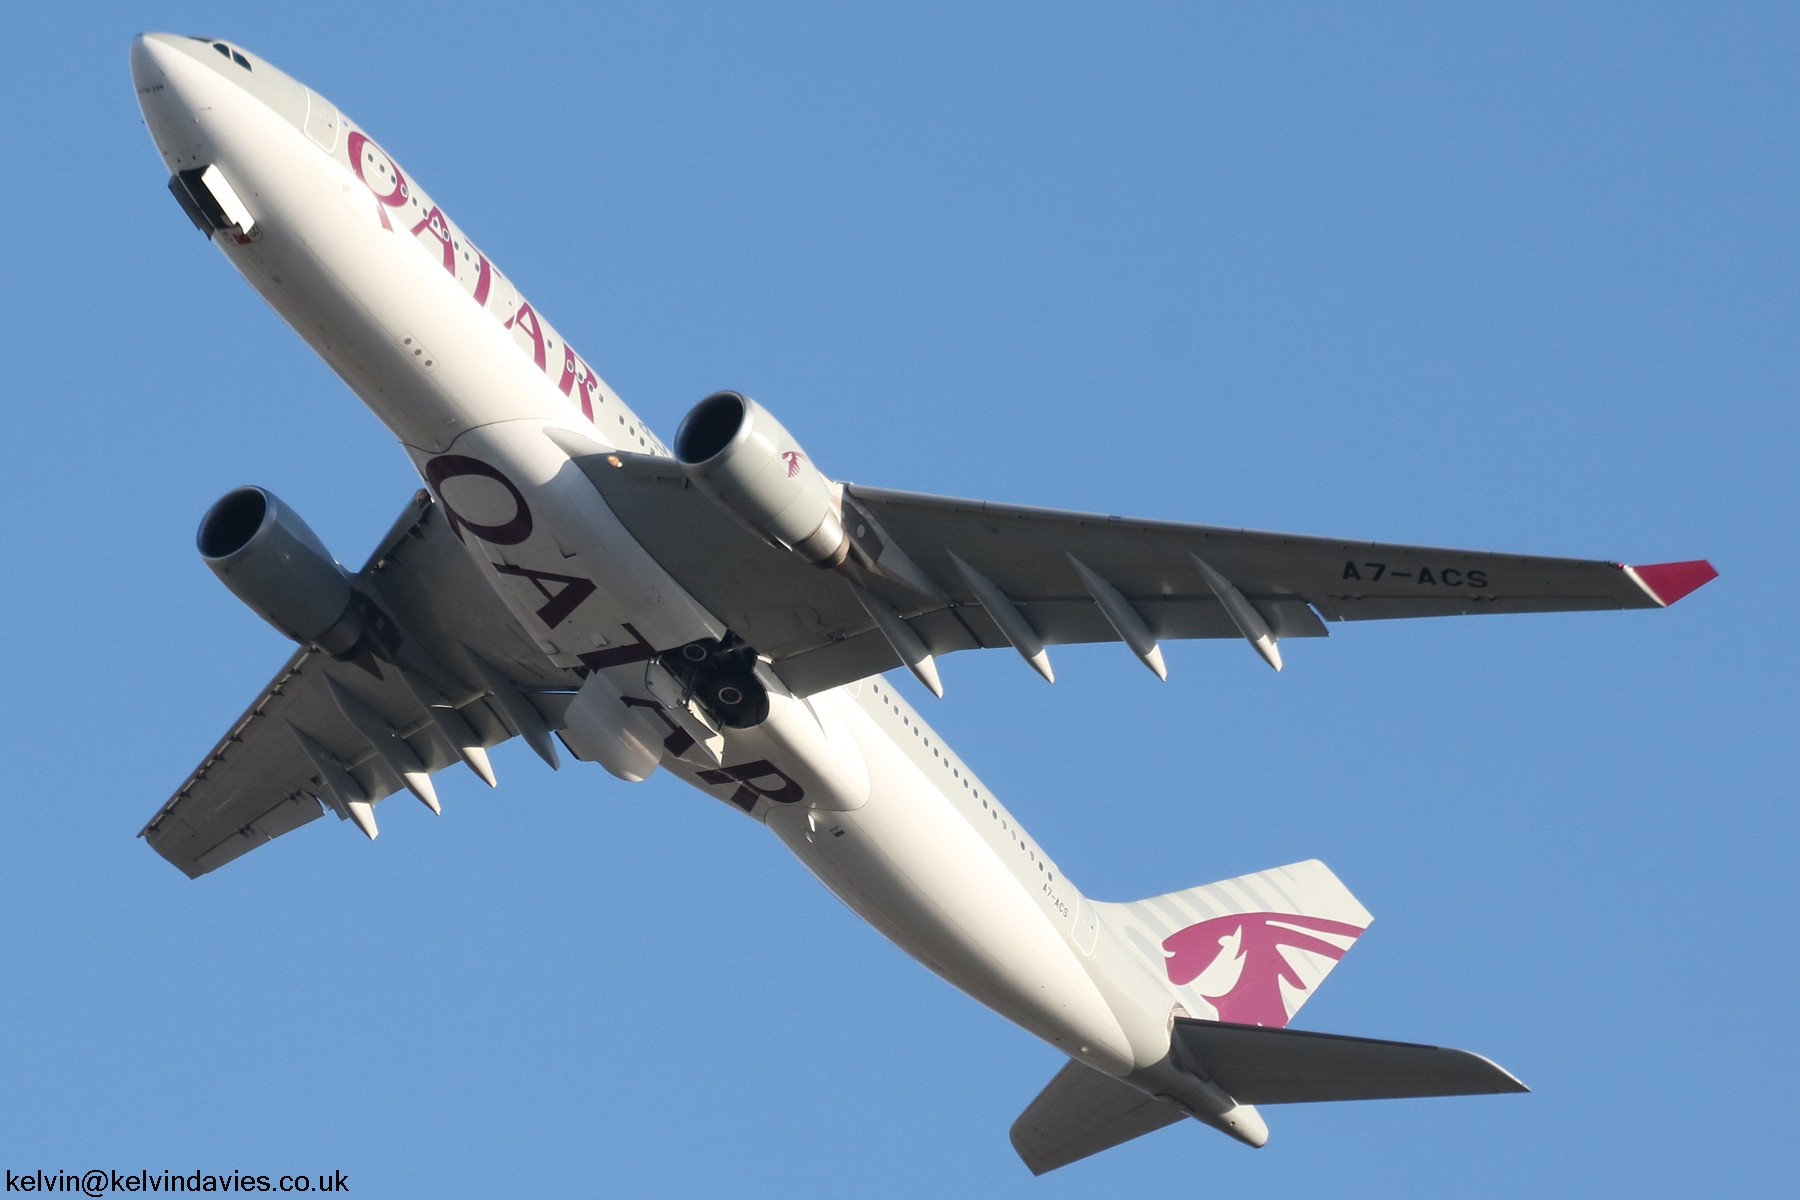 Qatar Airways A330 A7-ACS